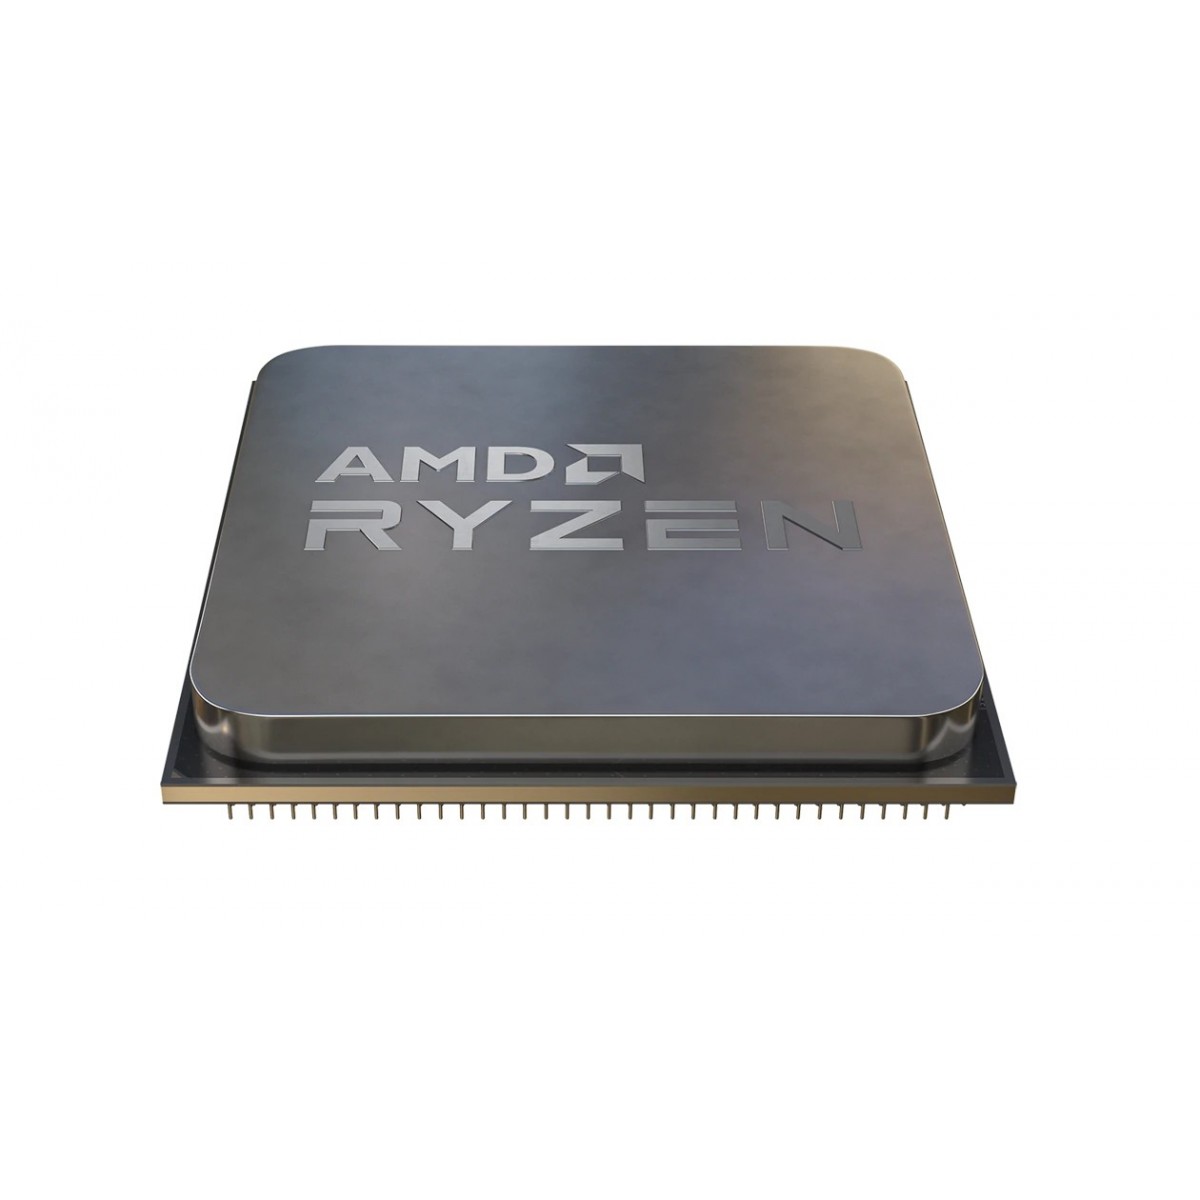 AMD CPU Desktop Ryzen 7 8C/16T 5800X3D (3.4/4.5GHz Boost,96MB,105W,AM4) Box